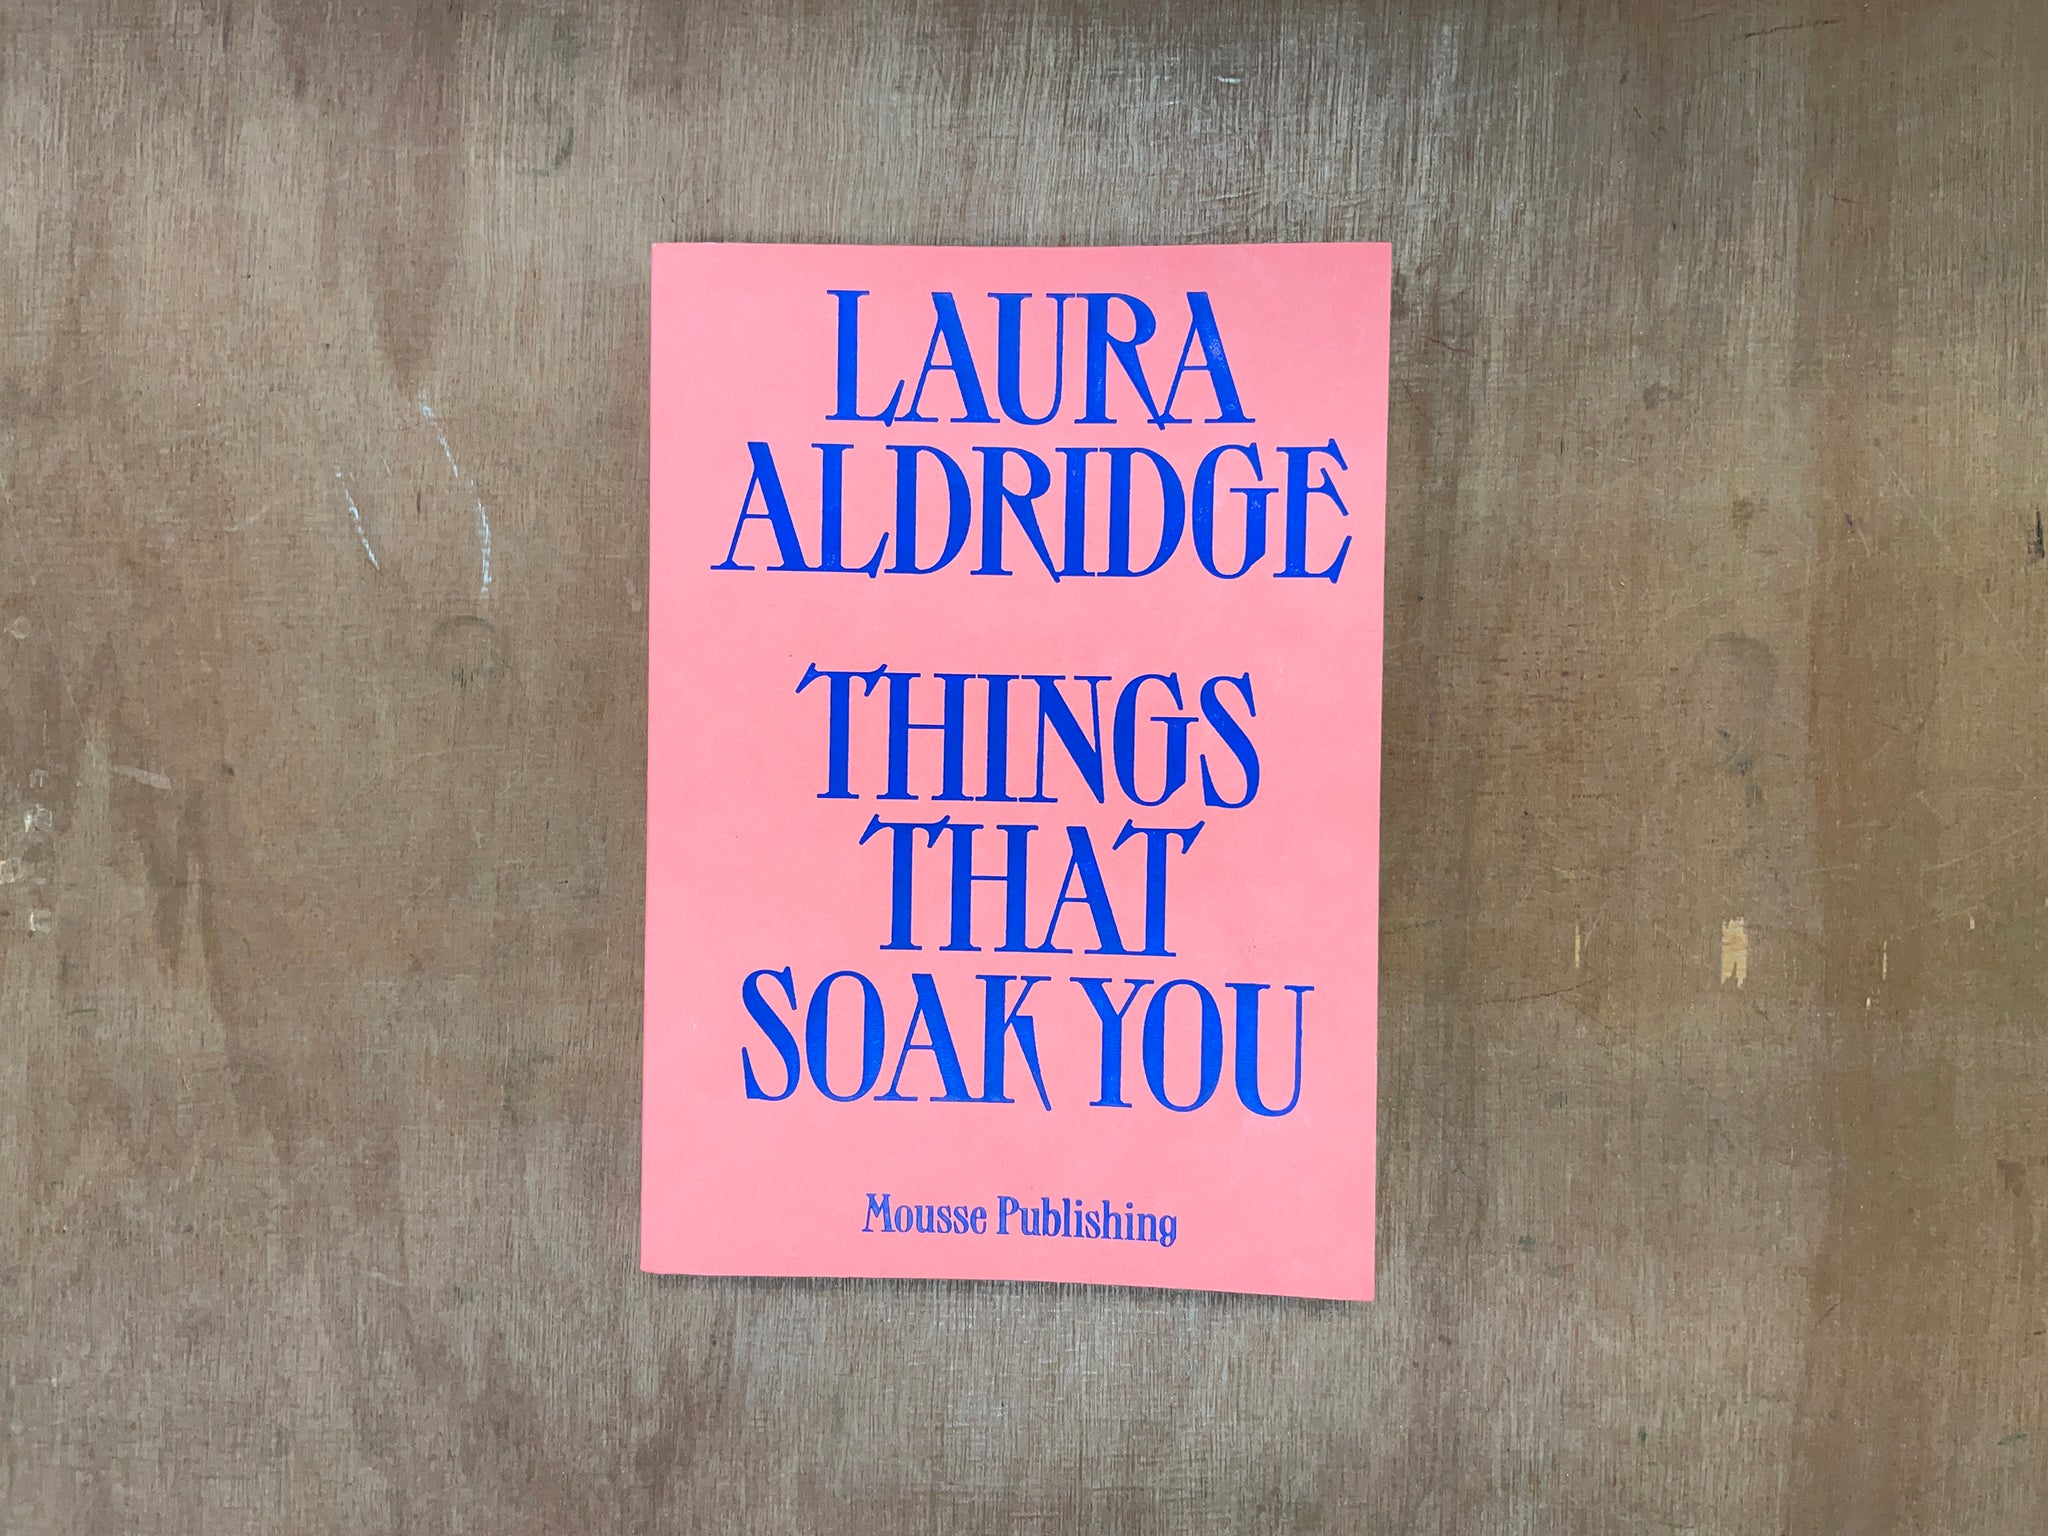 THINGS THAT SOAK YOU by Laura Aldridge